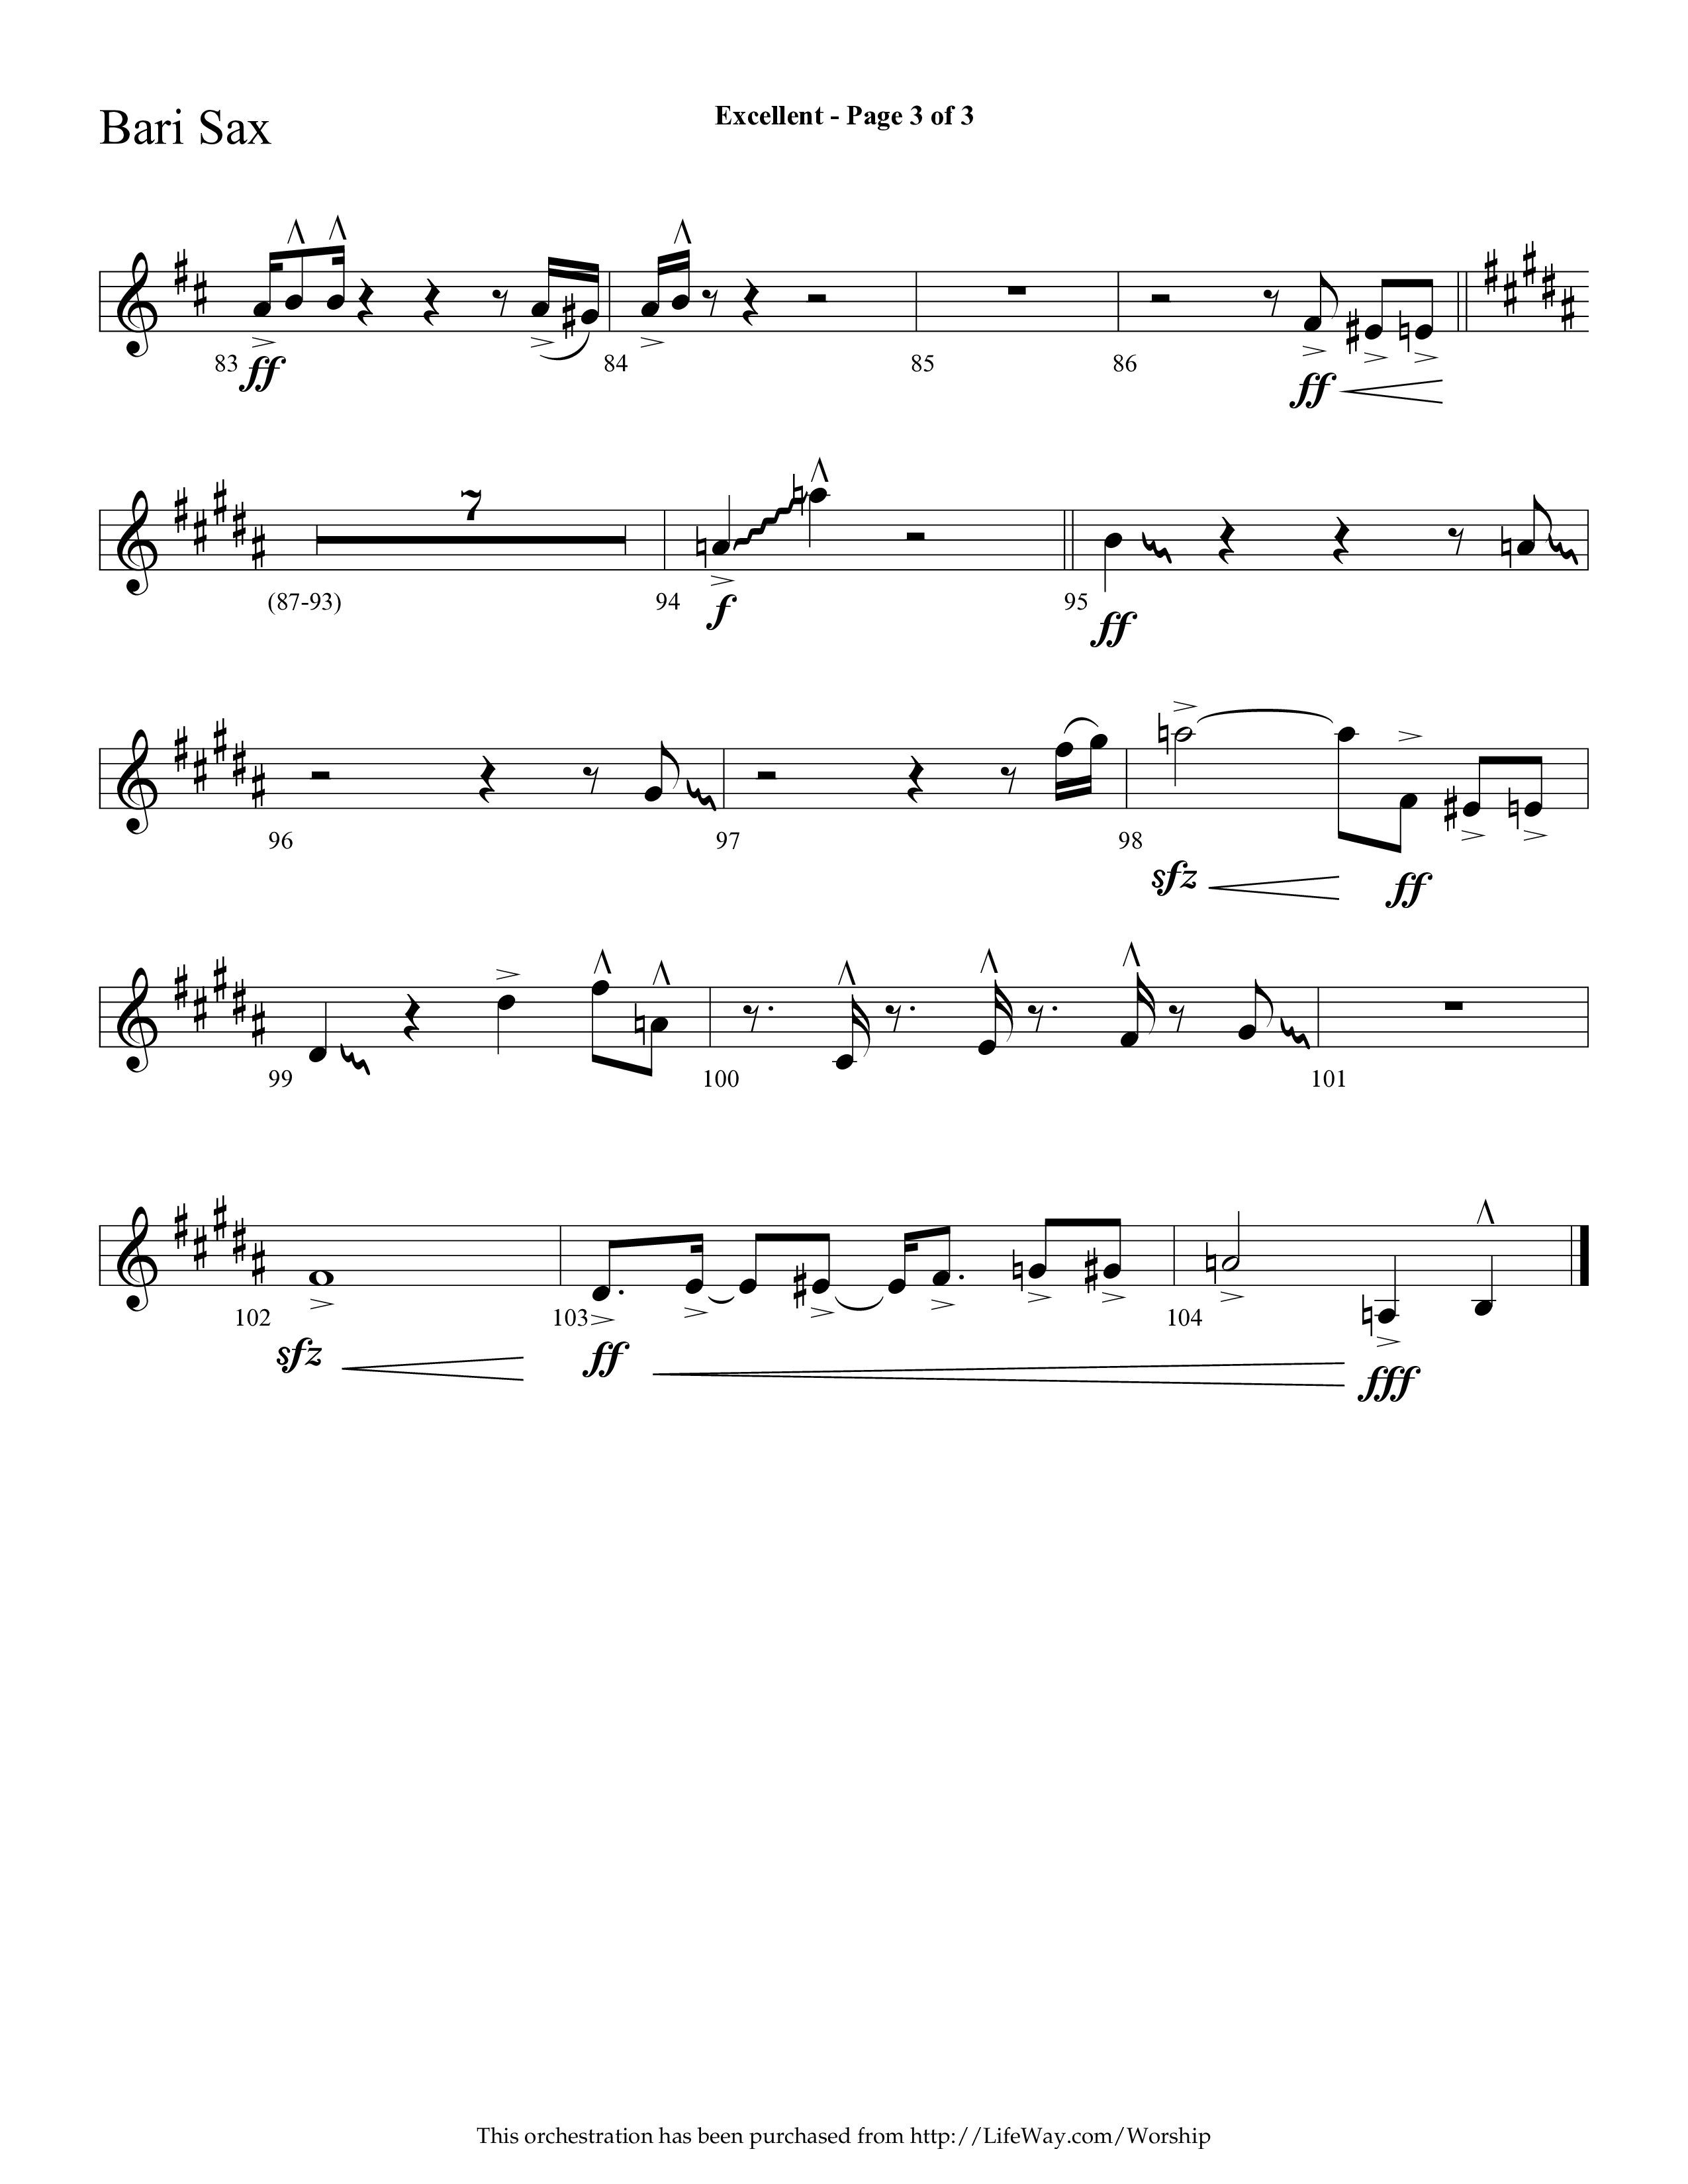 Excellent (Choral Anthem SATB) Bari Sax (Lifeway Choral / Arr. Cliff Duren)